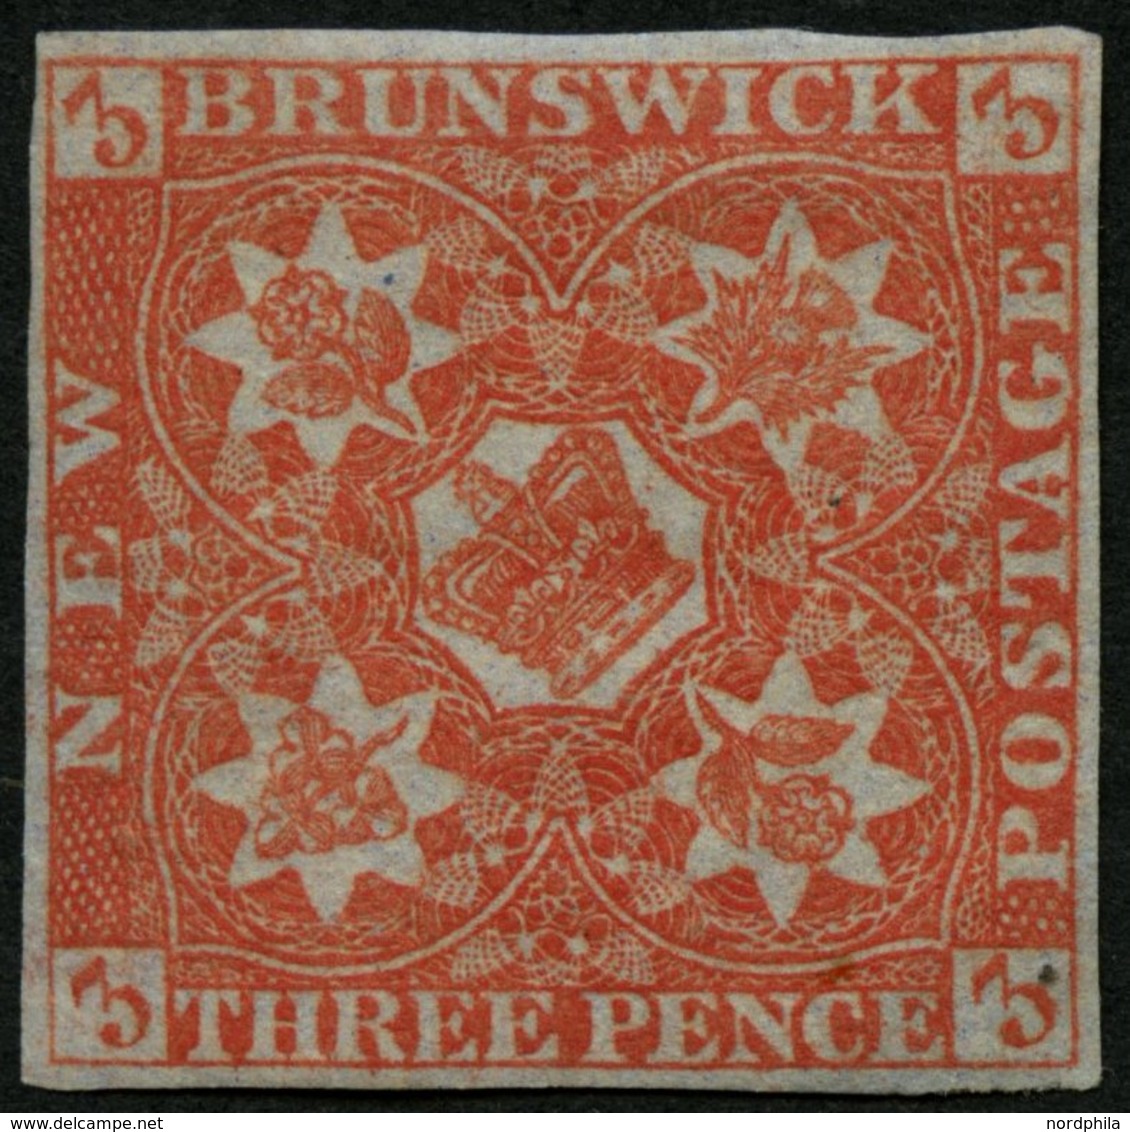 KANADA - NEUBRAUNSCHWEIG 1 *, 1851, 3 P. Rot, Falzrest, Vollrandiges Farbfrisches Prachtstück, Mi. 2800.- - Used Stamps